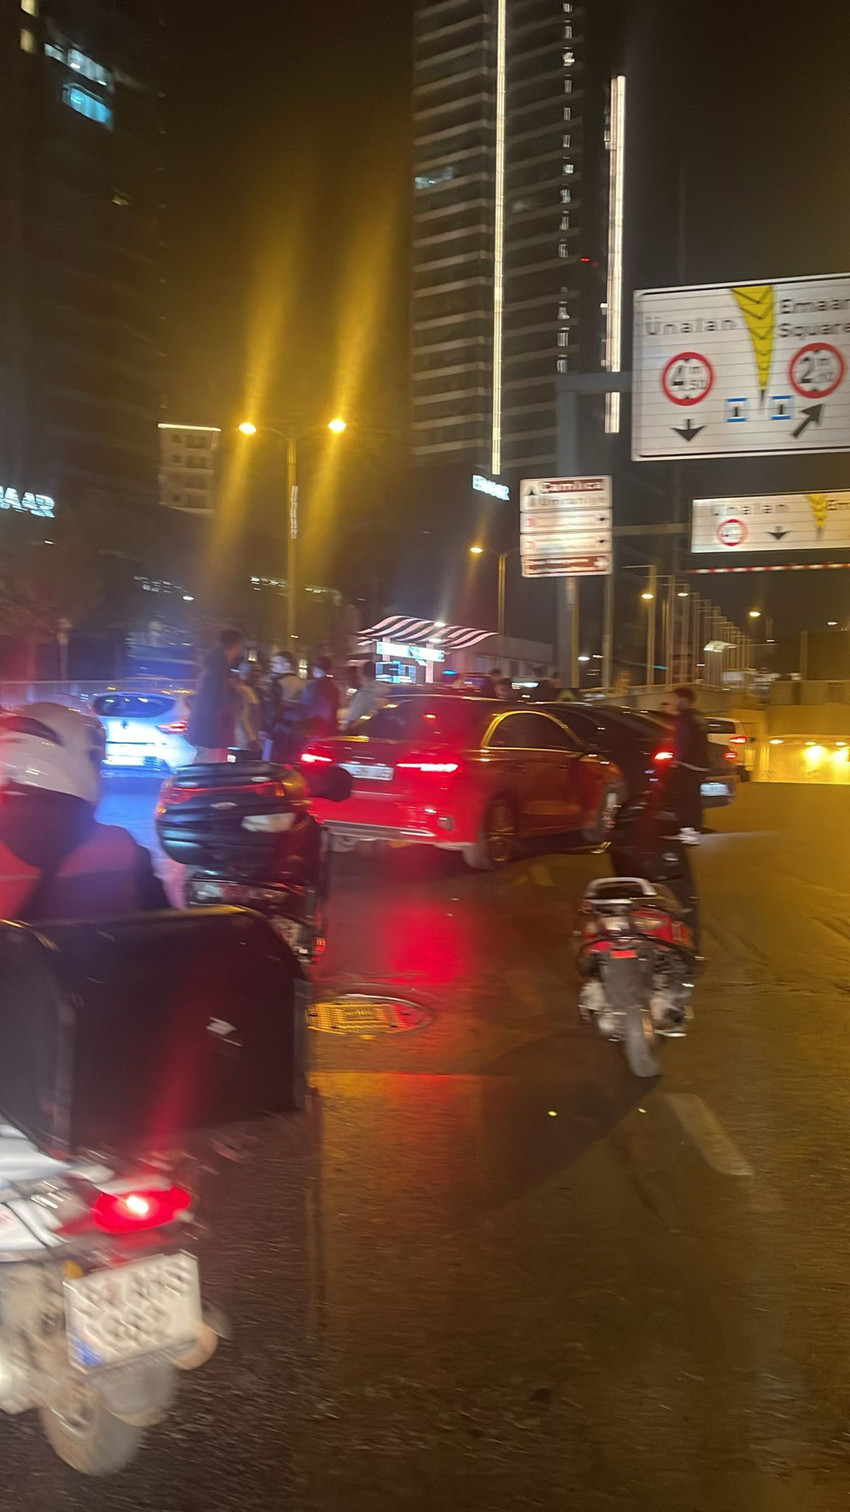 İstanbul Üsküdar'da seyir halindeki motokurye ile yine seyir halinde olan iki otomobildeki şahıslar arasında tartışma yaşandı. Tartışmanın büyümesi sonucu kavgaya dönüşen olayda motokurye bıçaklanarak ağır yaralandı.